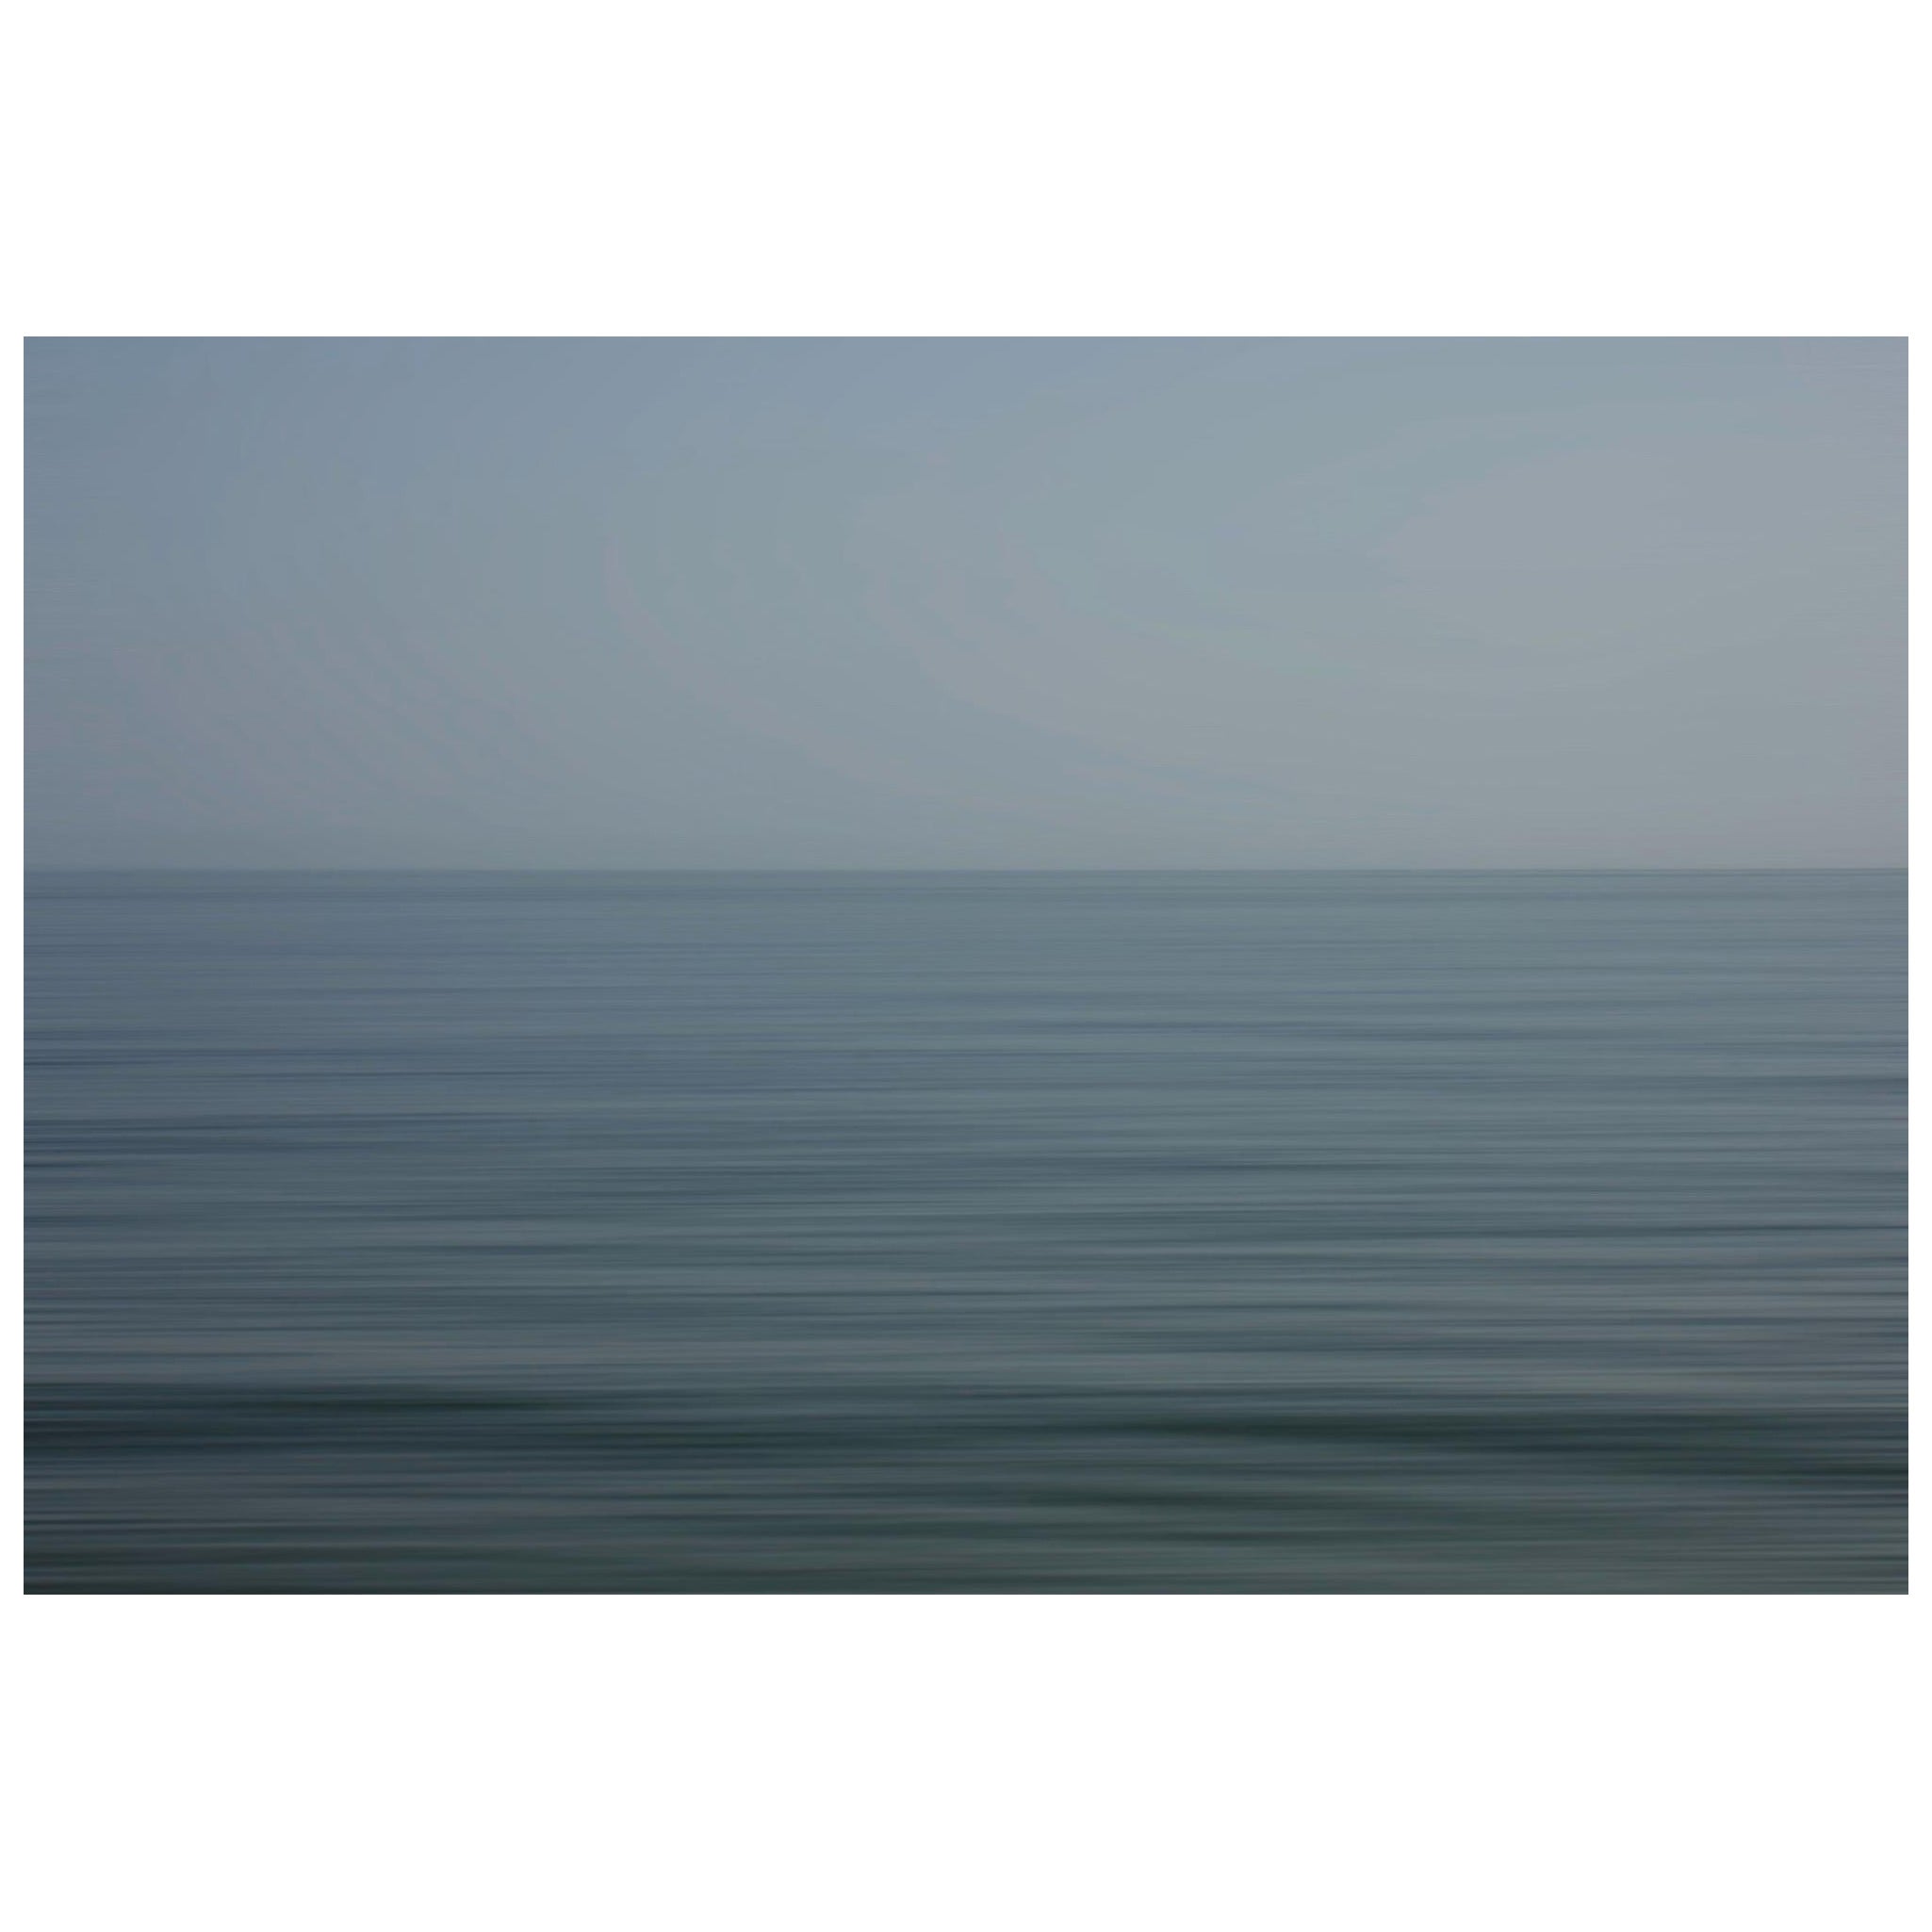 Bonnie Edelman "Algarve Blue, Portugal" Photograph, Scapes Series, 2021 For Sale